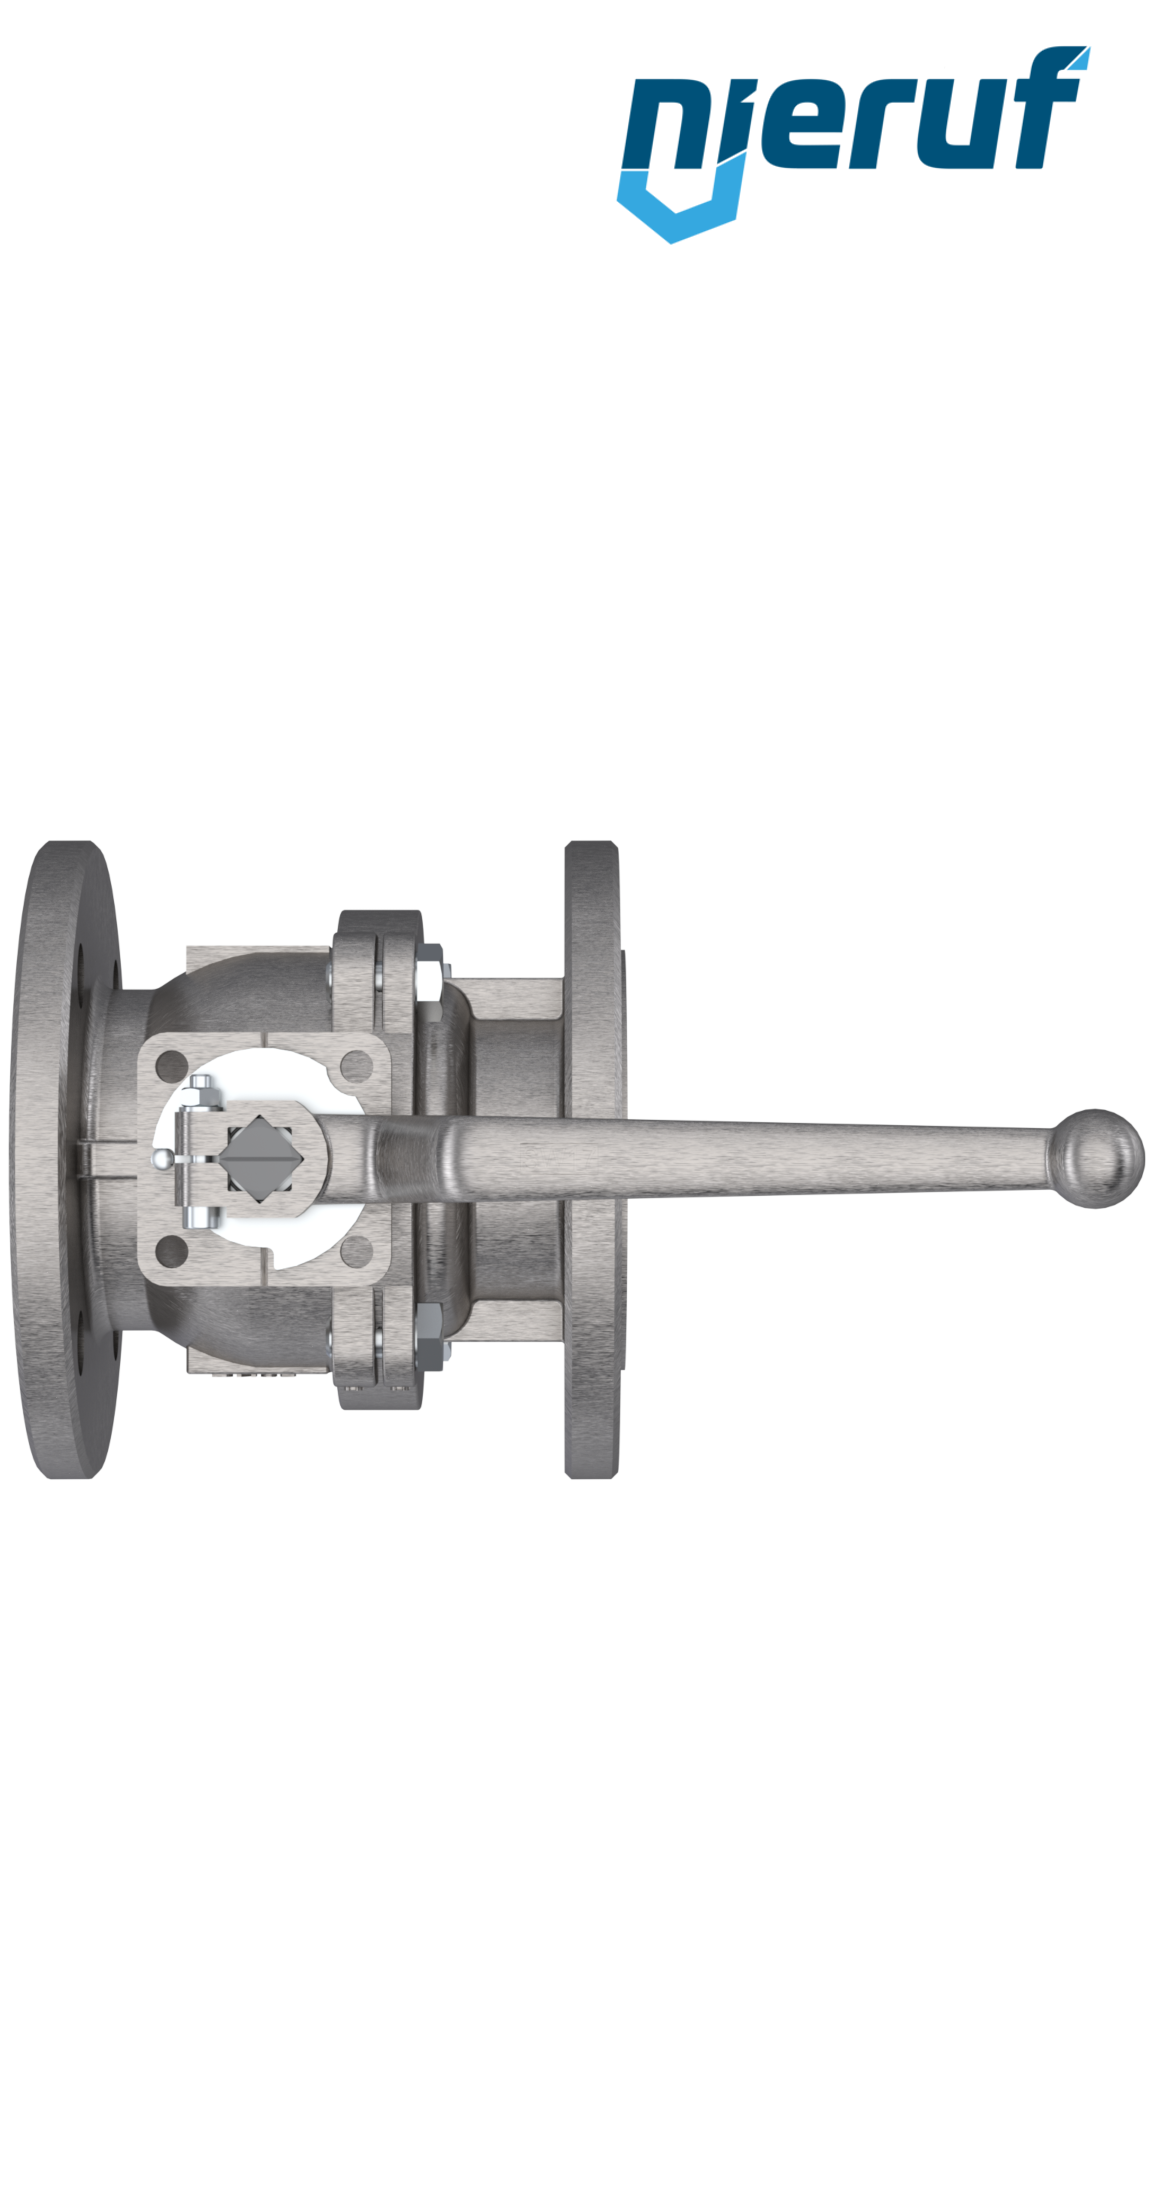 FDA flange ball valve FK05 DN32 PN40 made of stainless steel 1.4408